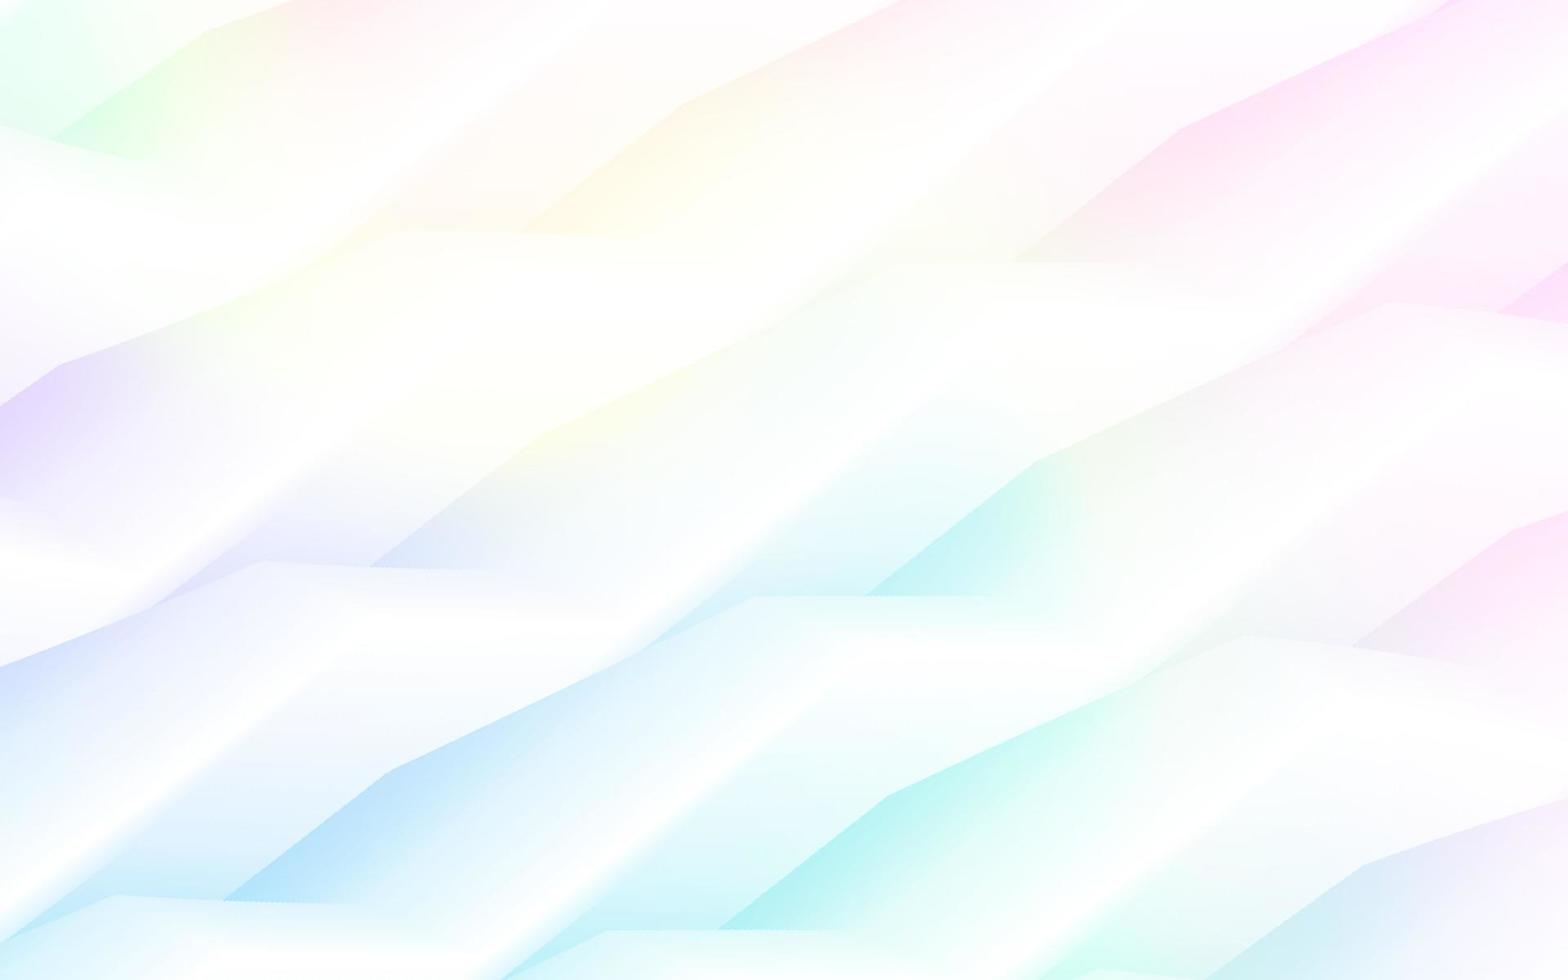 Pastel 3d wave background design, Vector illustration, Eps10